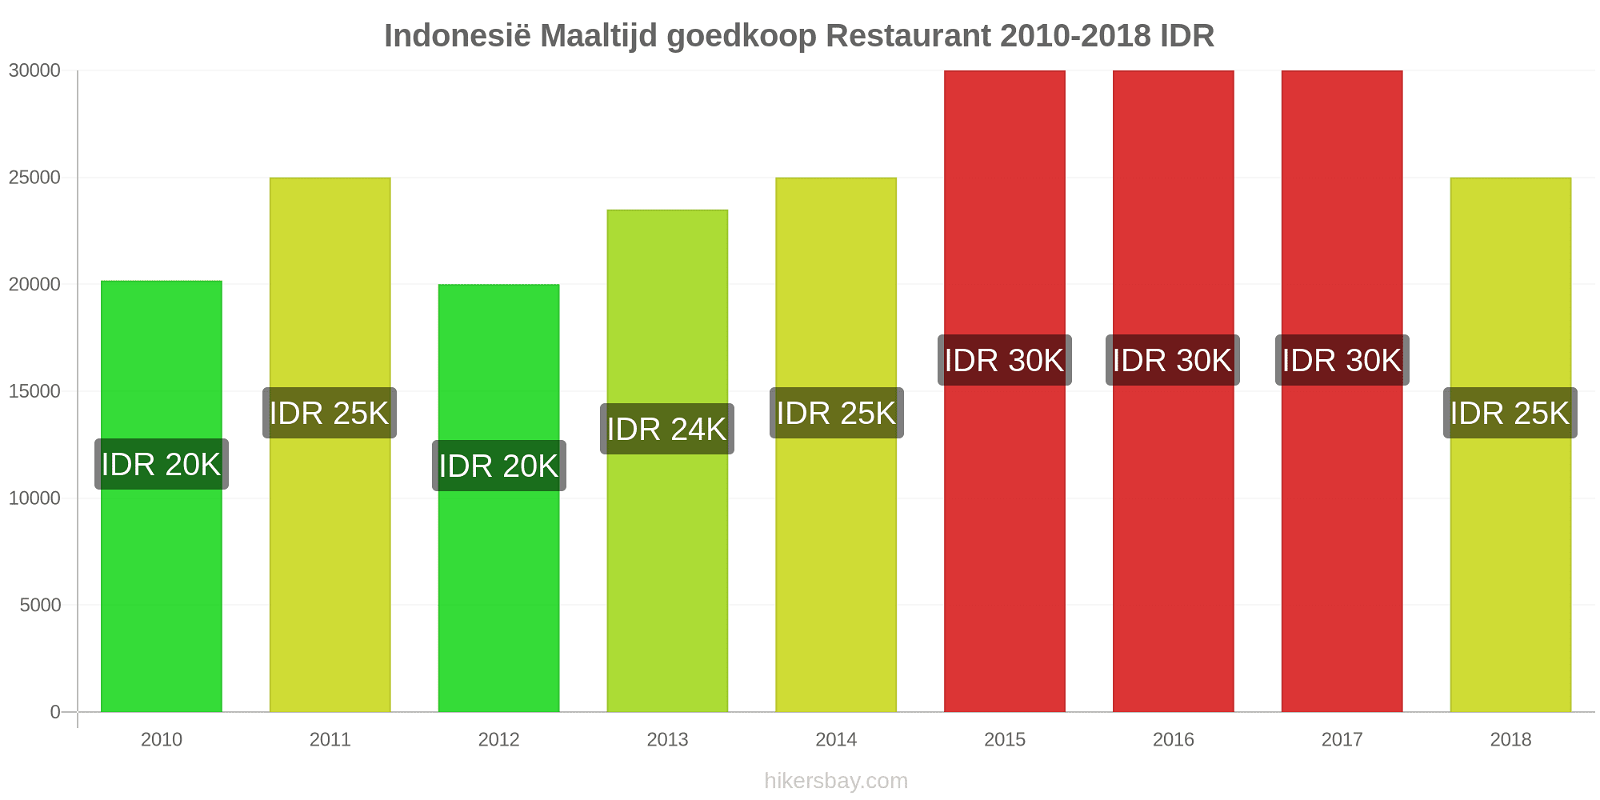 Indonesië prijswijzigingen Maaltijd in een goedkoop restaurant hikersbay.com